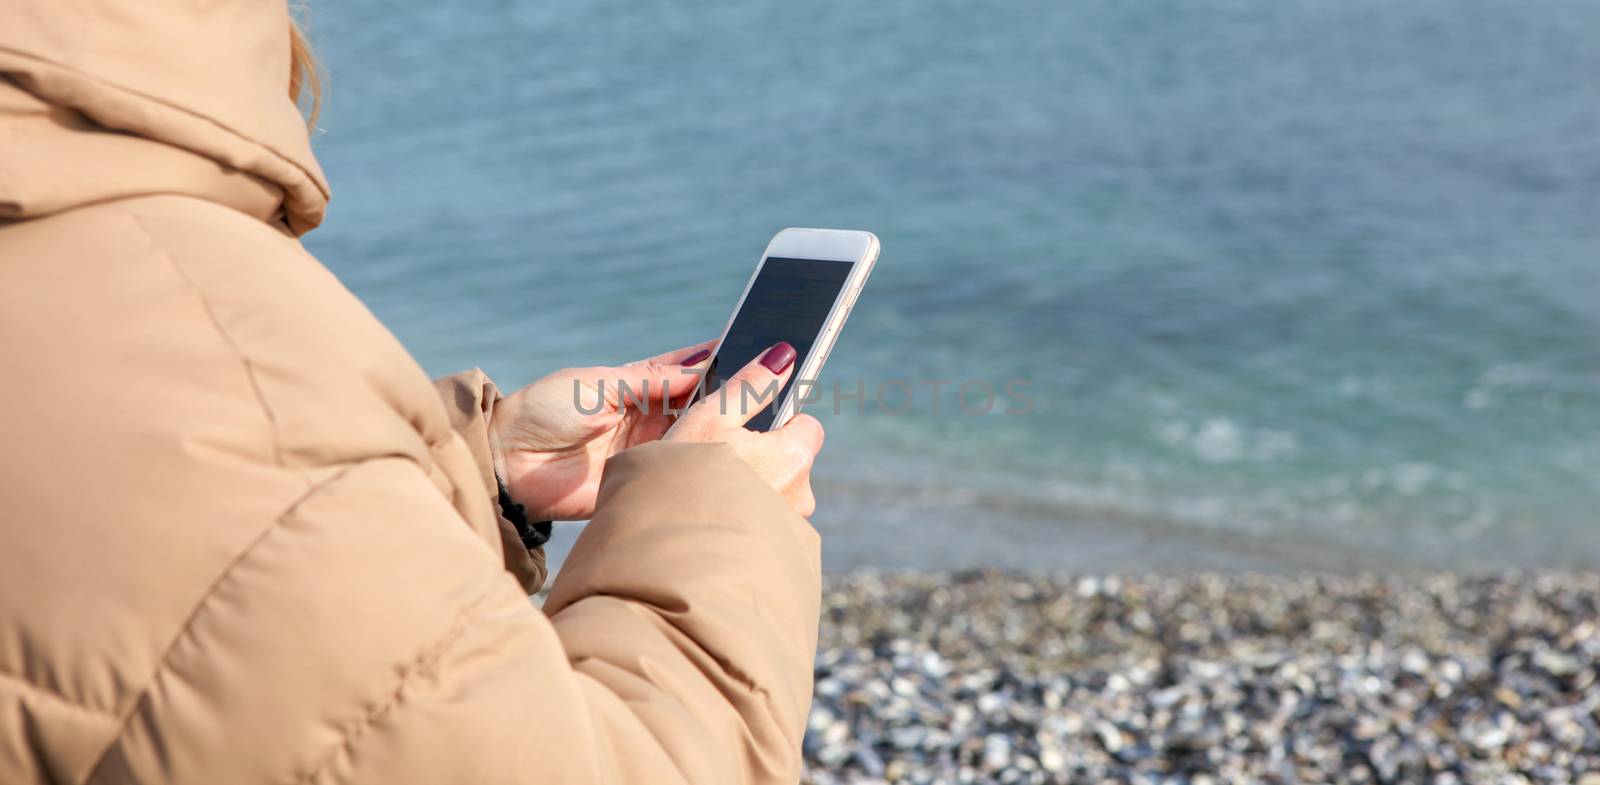 Beautiful Woman Using Smart Phone On A Beach by nenovbrothers